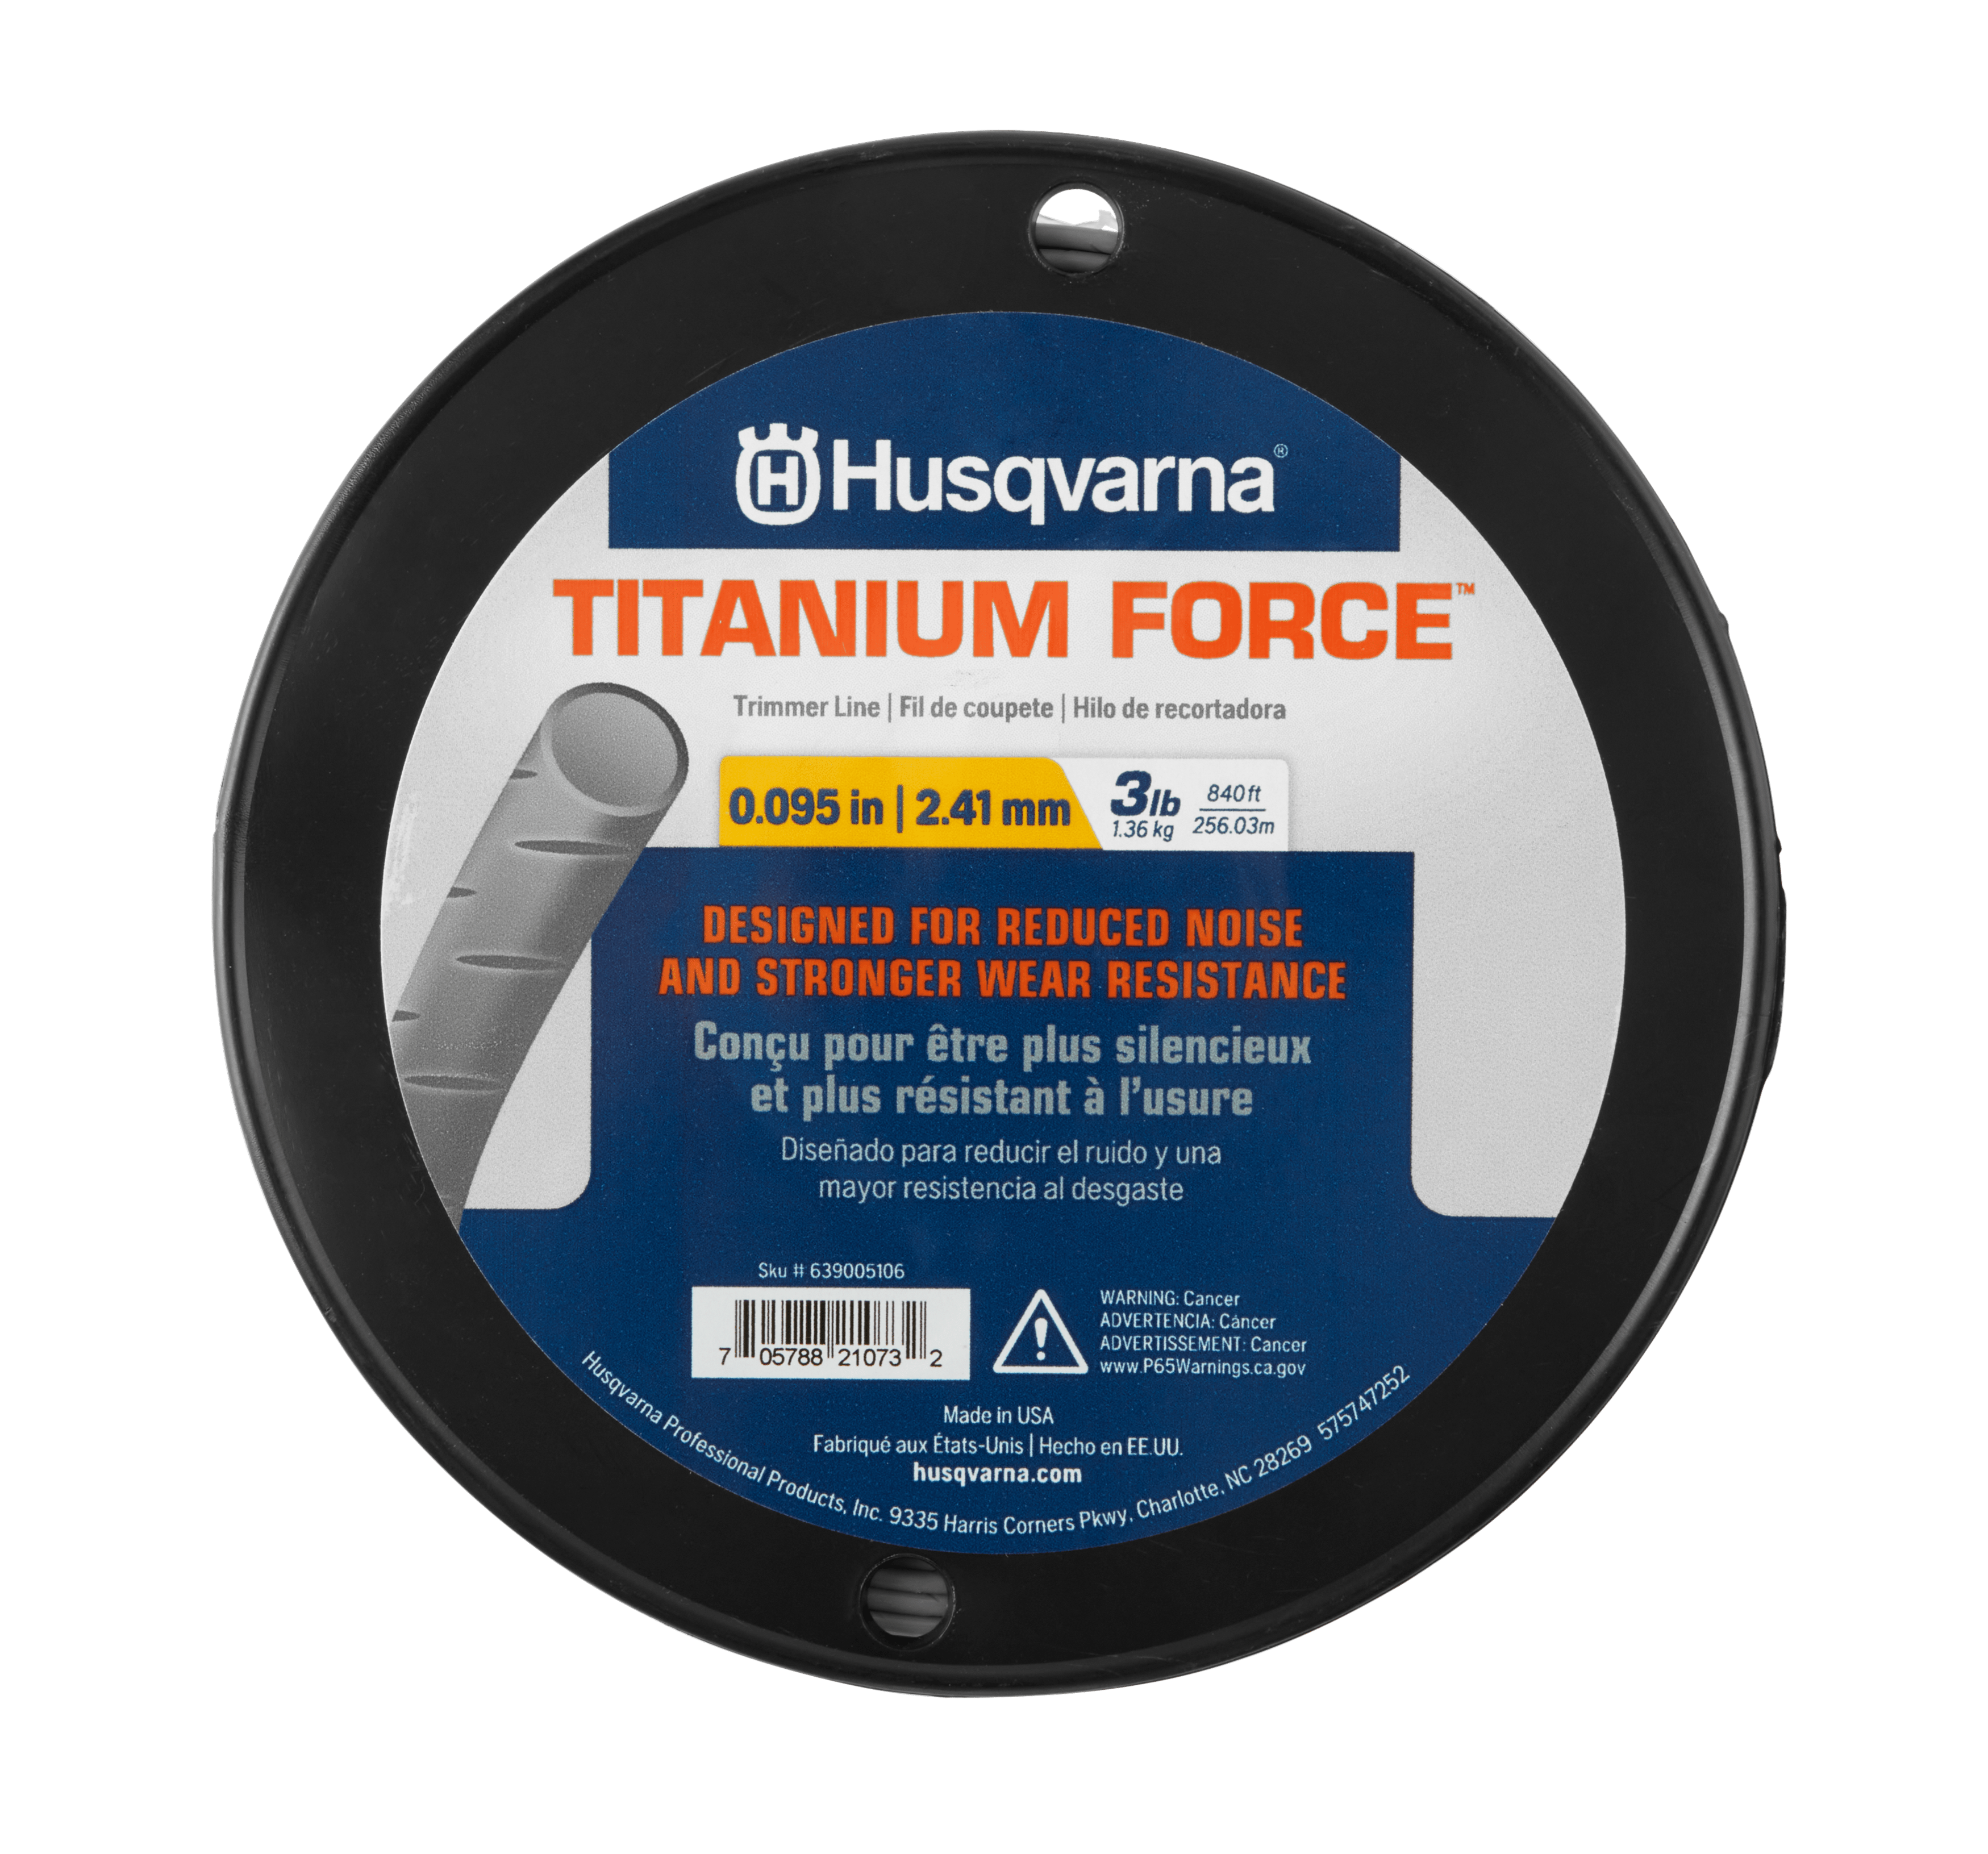 639005106 - Titanium Force 3 lb